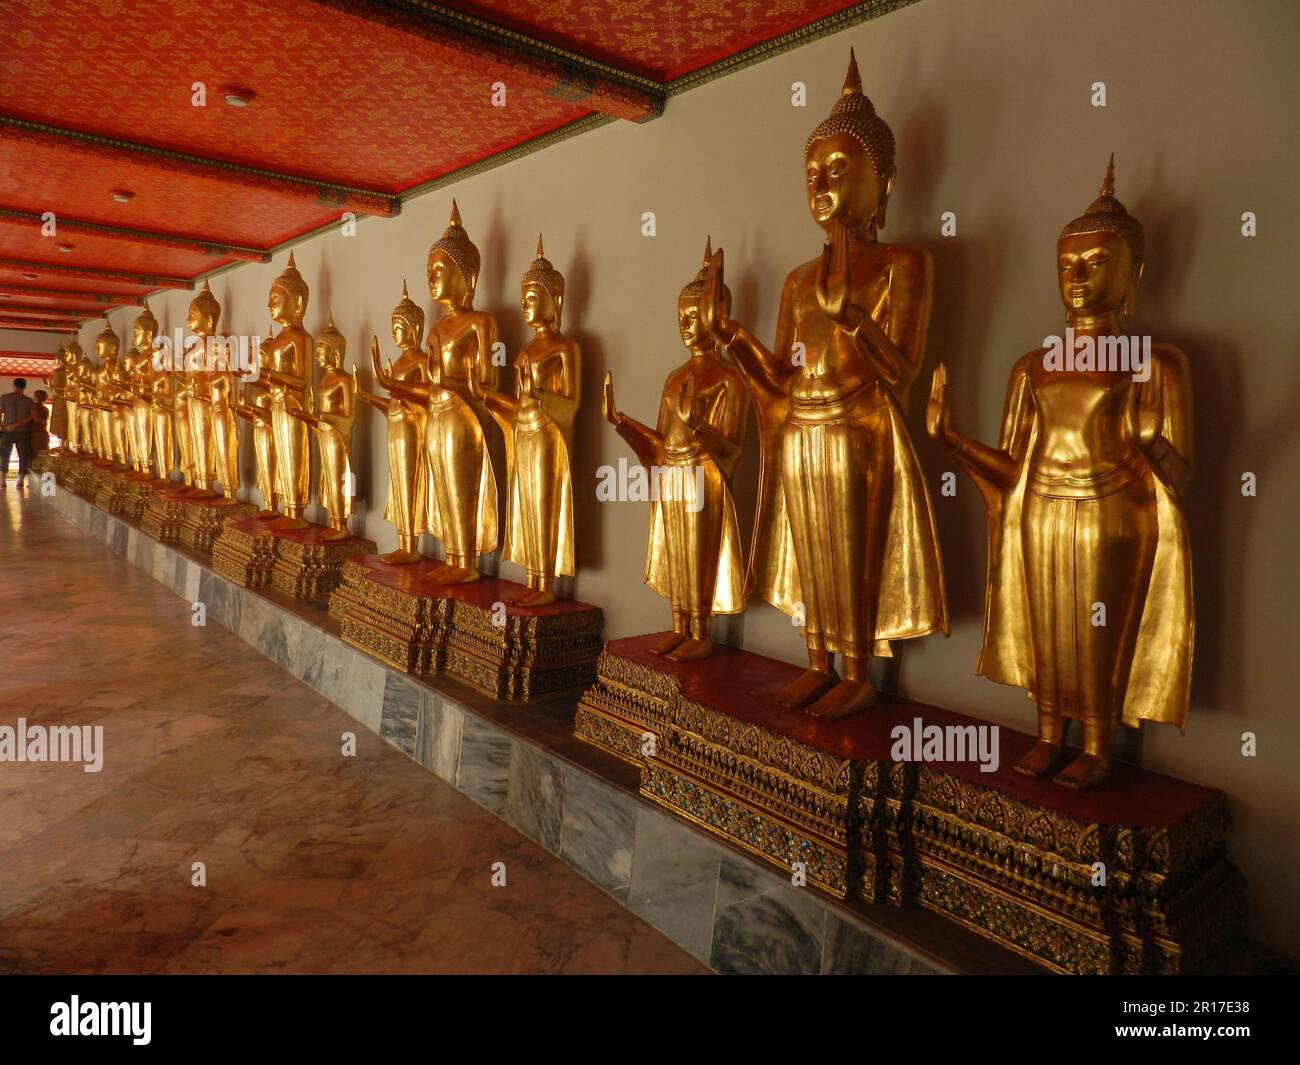 Thailand, Bangkok: Eine Reihe von stehenden Buddhas in den Klöstern des Wat Pho, dem Tempel des liegenden Buddha. Stockfoto